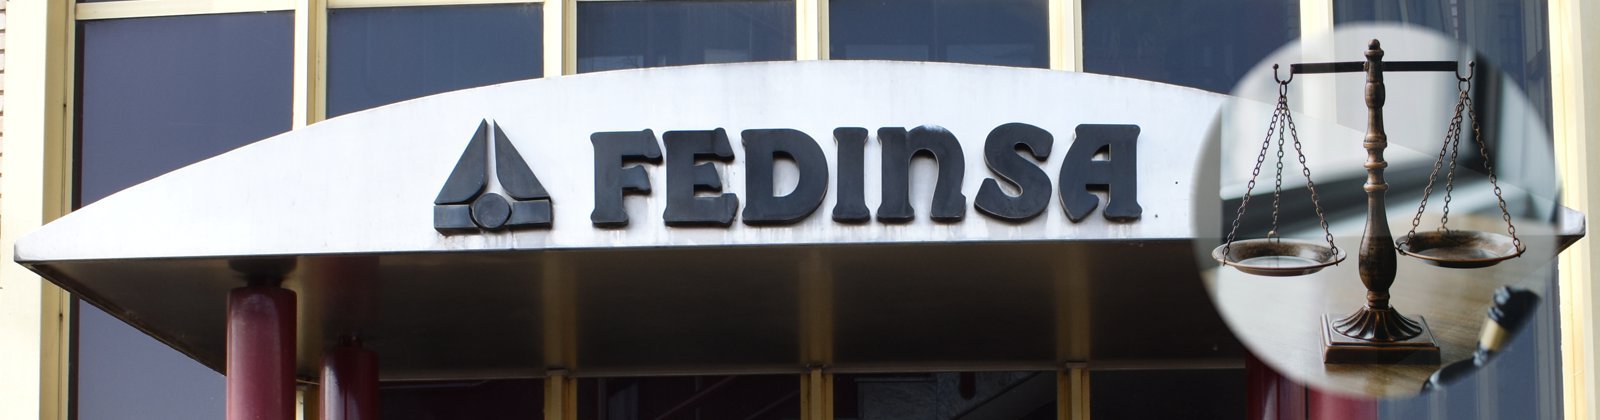 Fedinsa - Legal warning